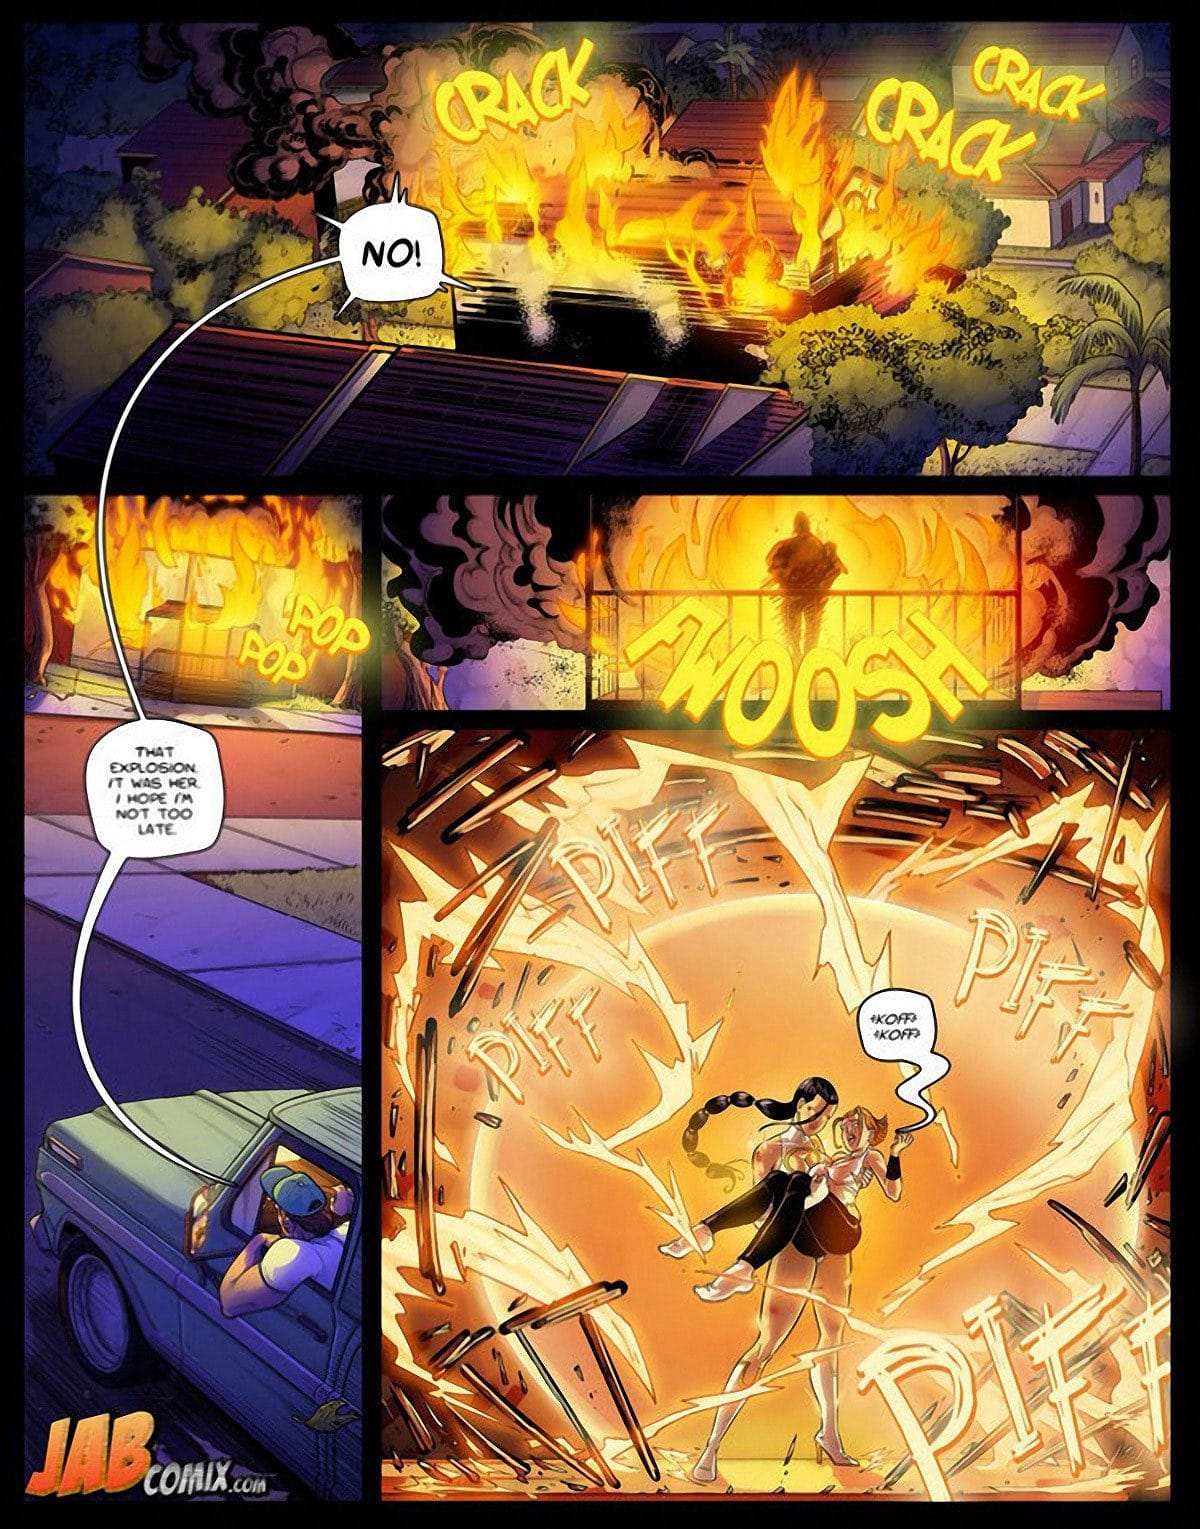 Jab comic "Omega Girl 6" - page 1